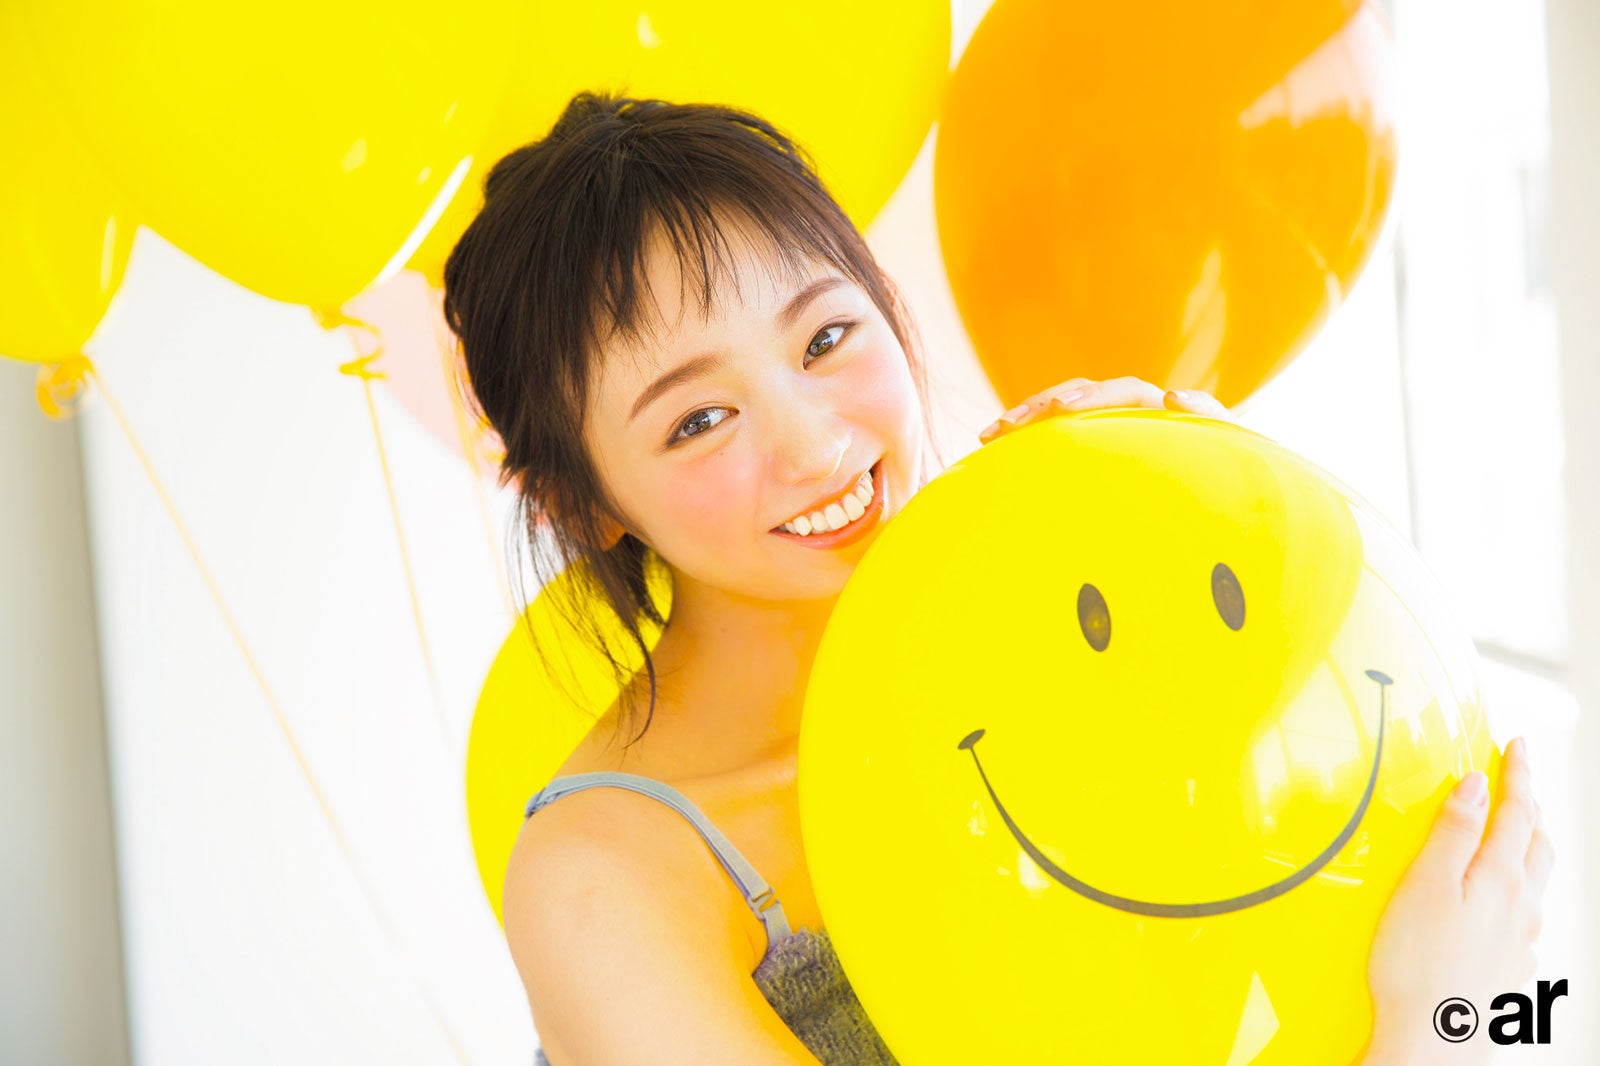 欅坂46今泉佑唯、引き寄せチーク×弾ける笑顔で魅力溢れる - モデルプレス